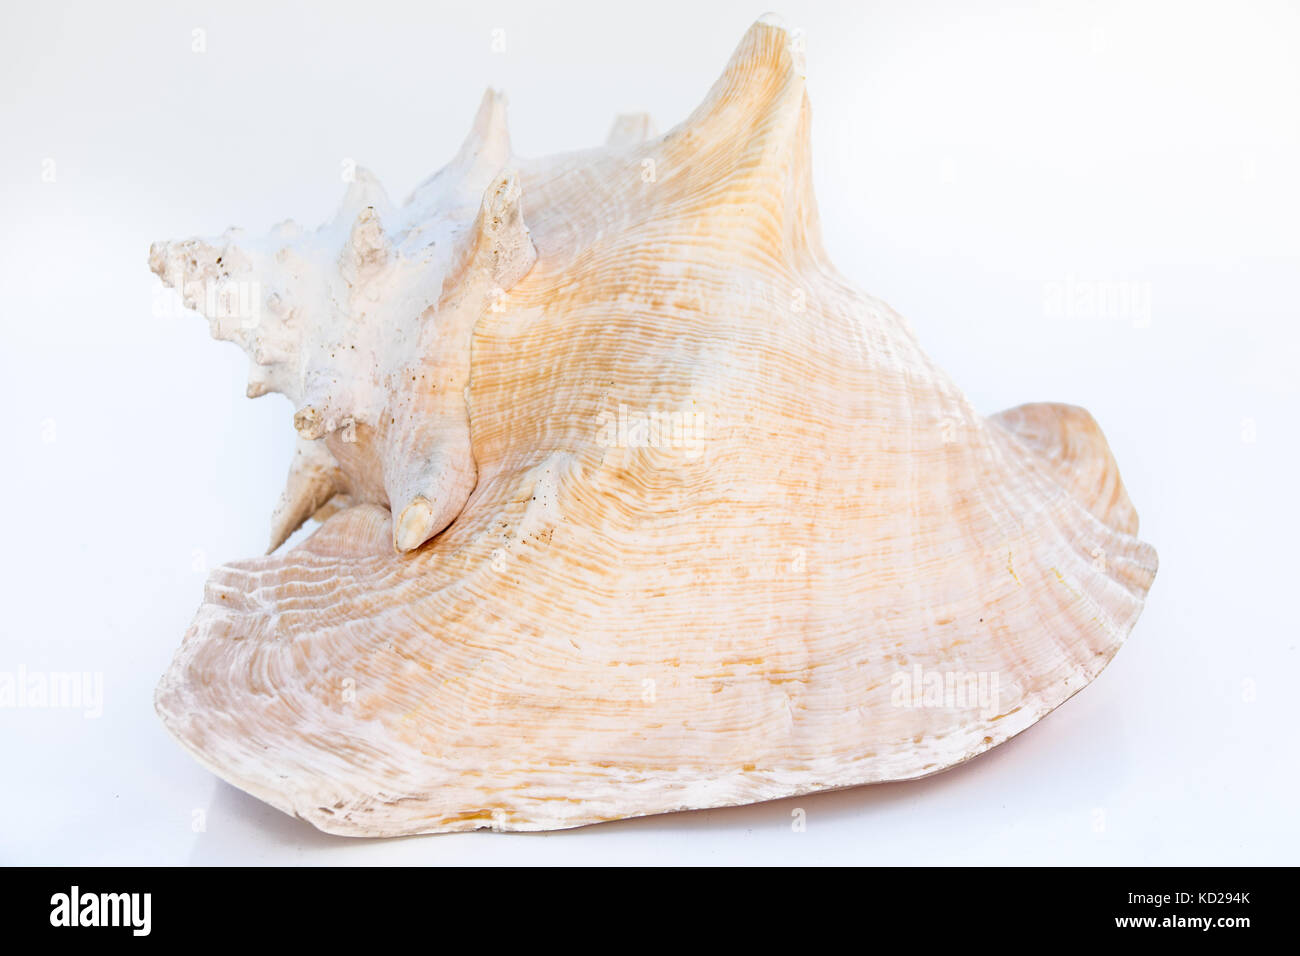 Wunderschöne Muschel Kaurischnecken, tropischen Meer und Wurm, auf weißem Hintergrund. Den ganzen Körper bildet die ganze Shell. Stockfoto